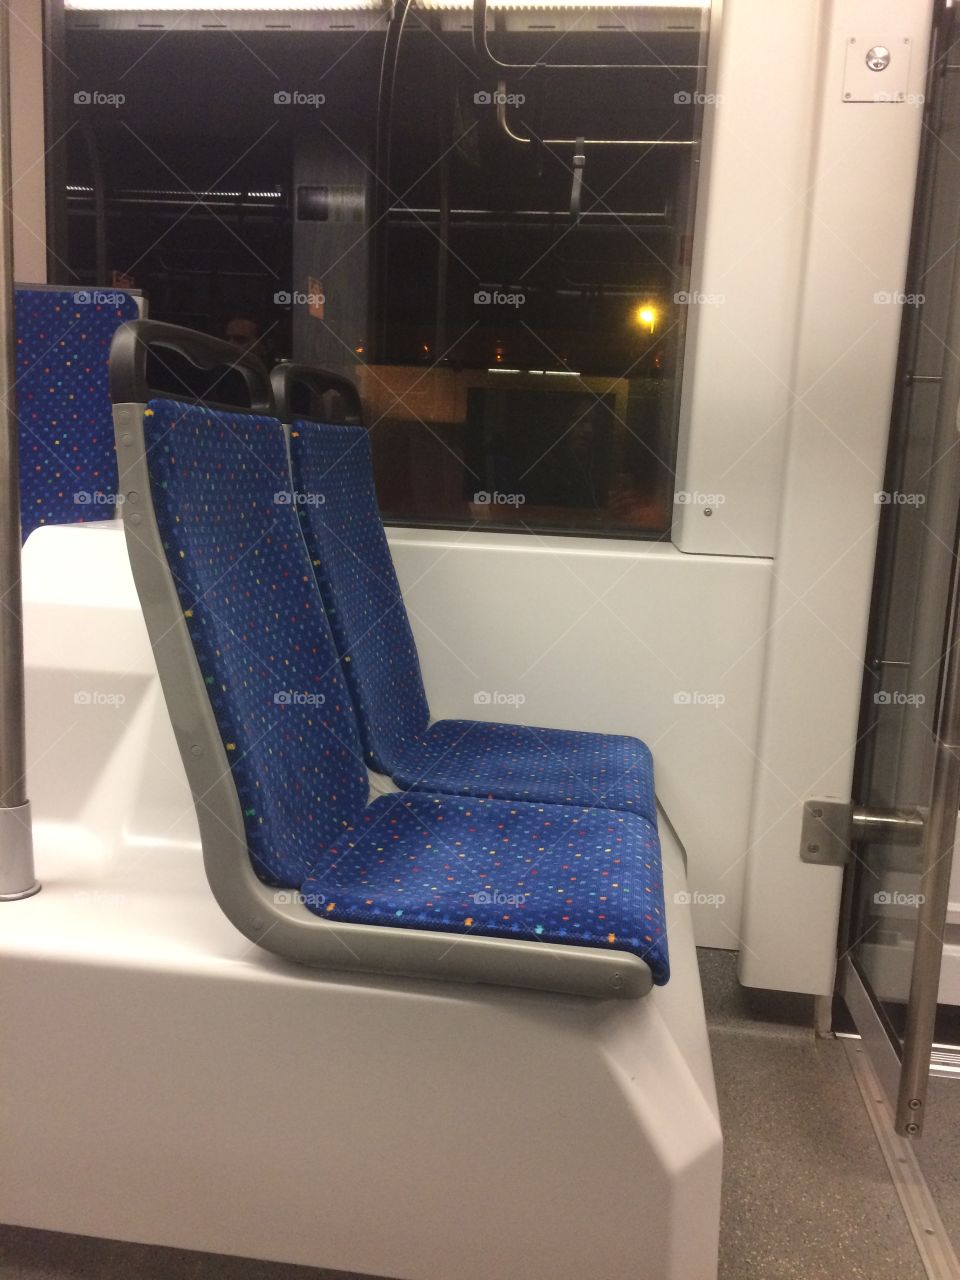 Seats 💺 of metro 🚋 